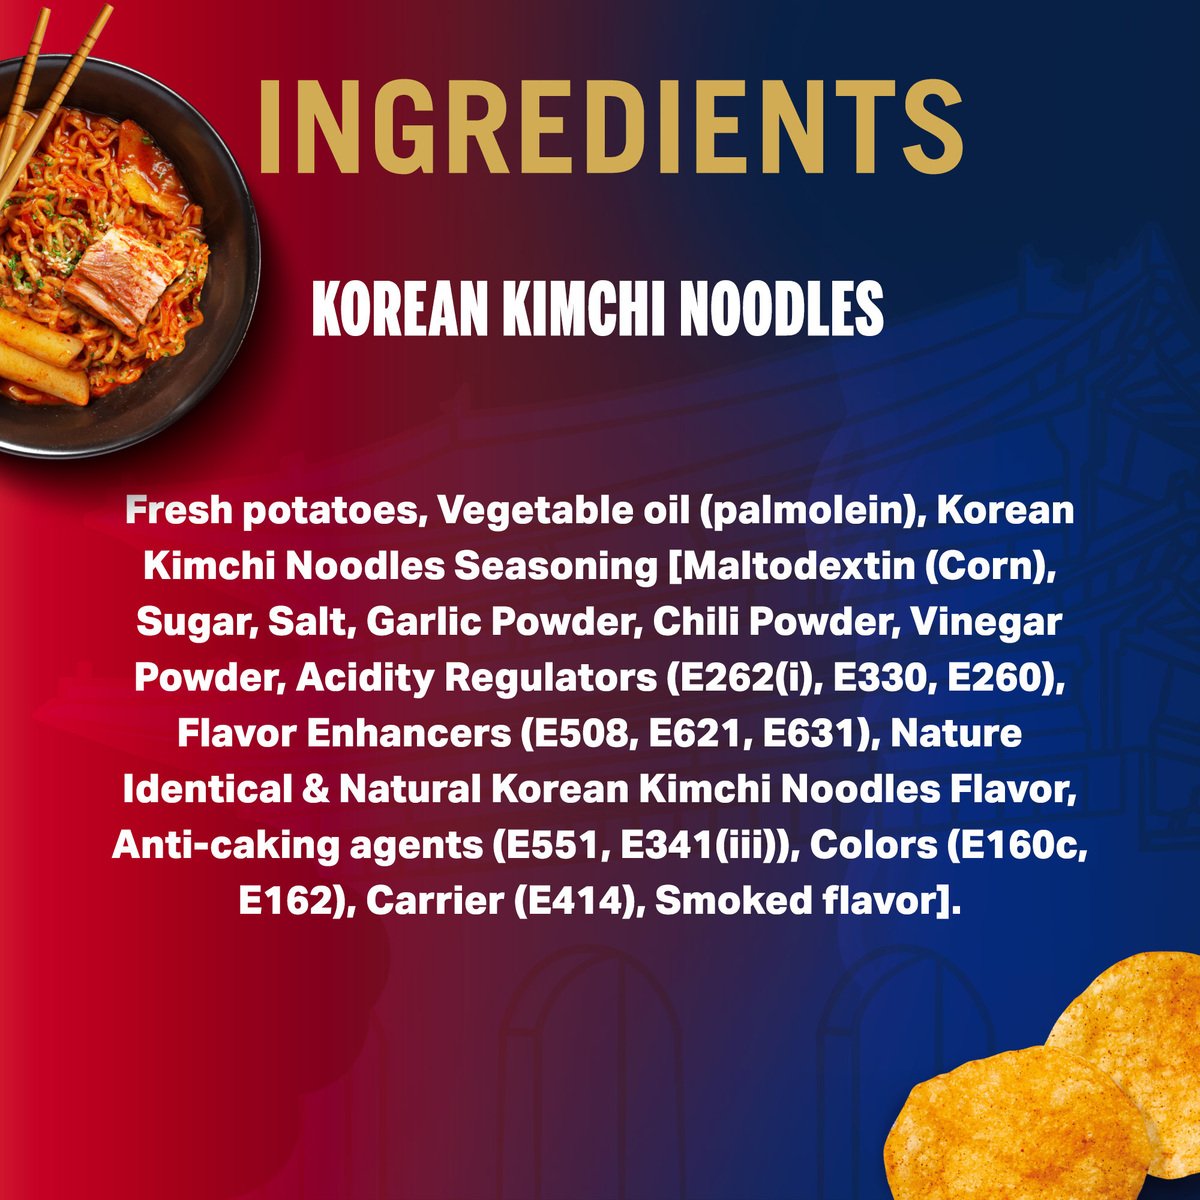 ليز رقائق بطاطس بنكهة نودلز كيمتشي الكورية 40 جم